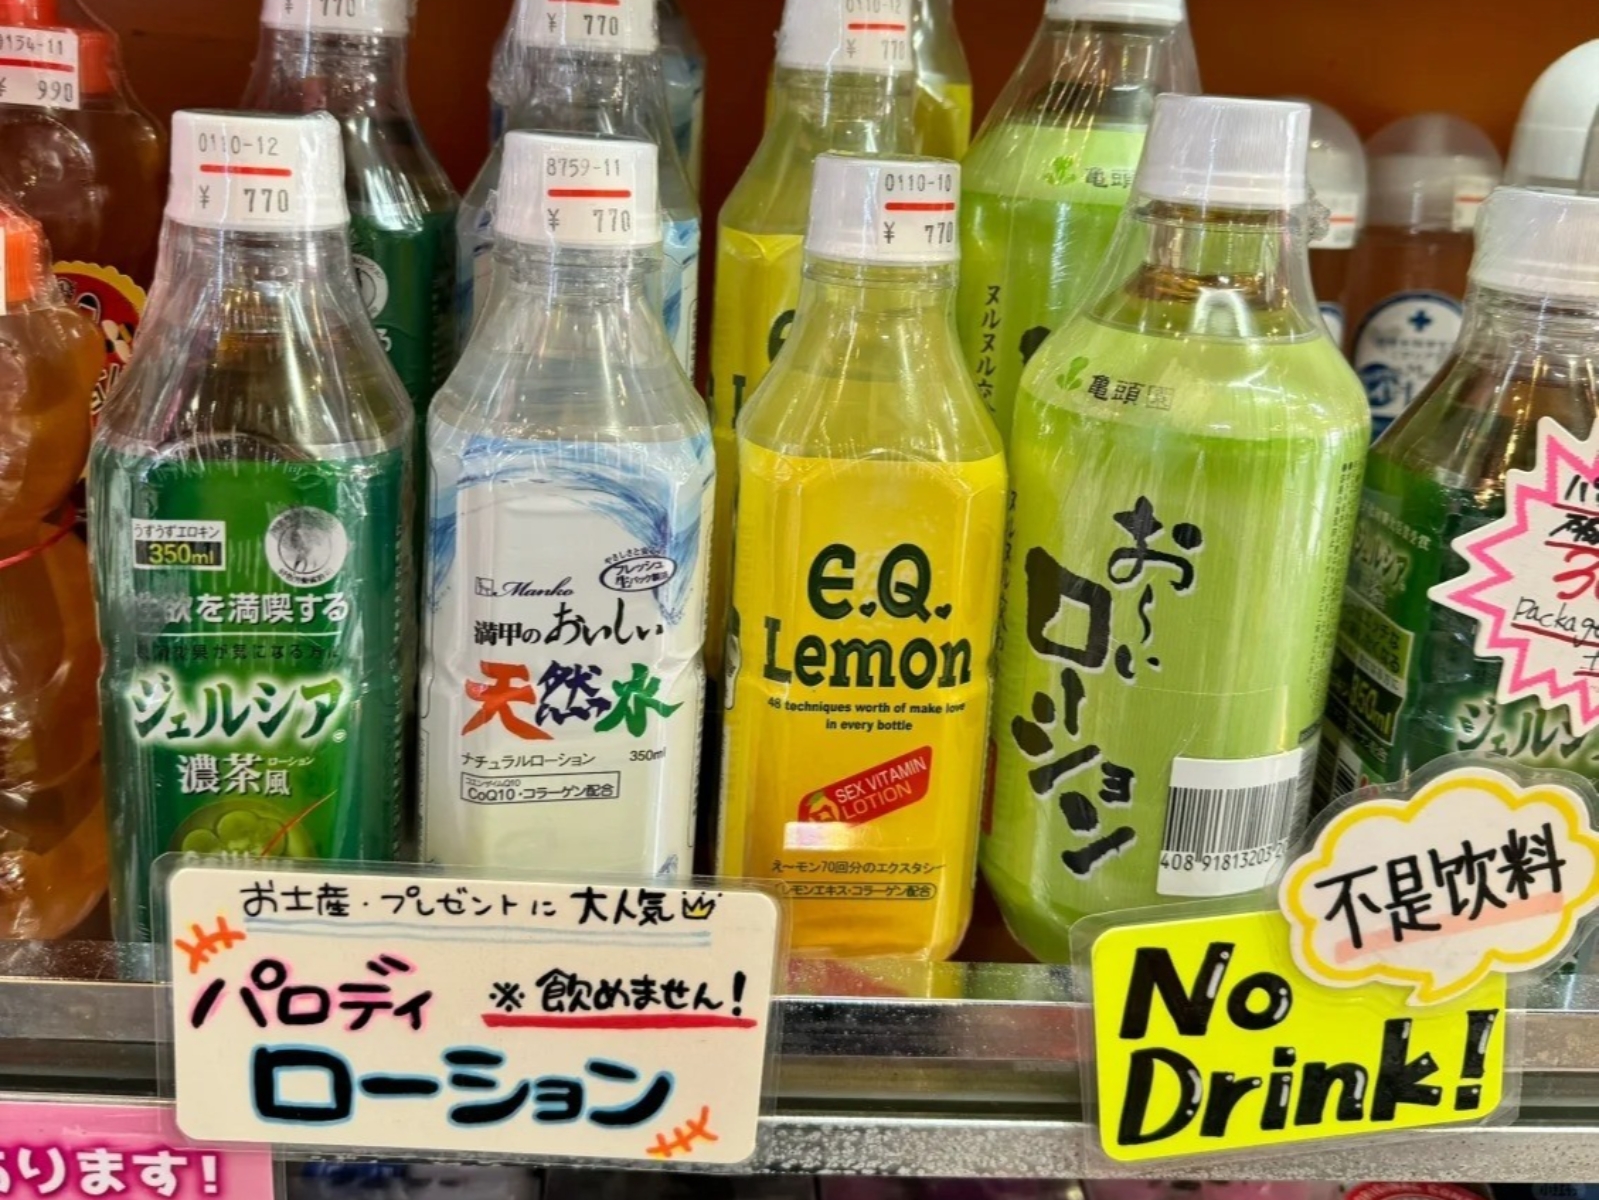 日本店家賣「綠茶、檸檬水」商品卻標著「不是飲料」，老司機一秒點出真實原因！